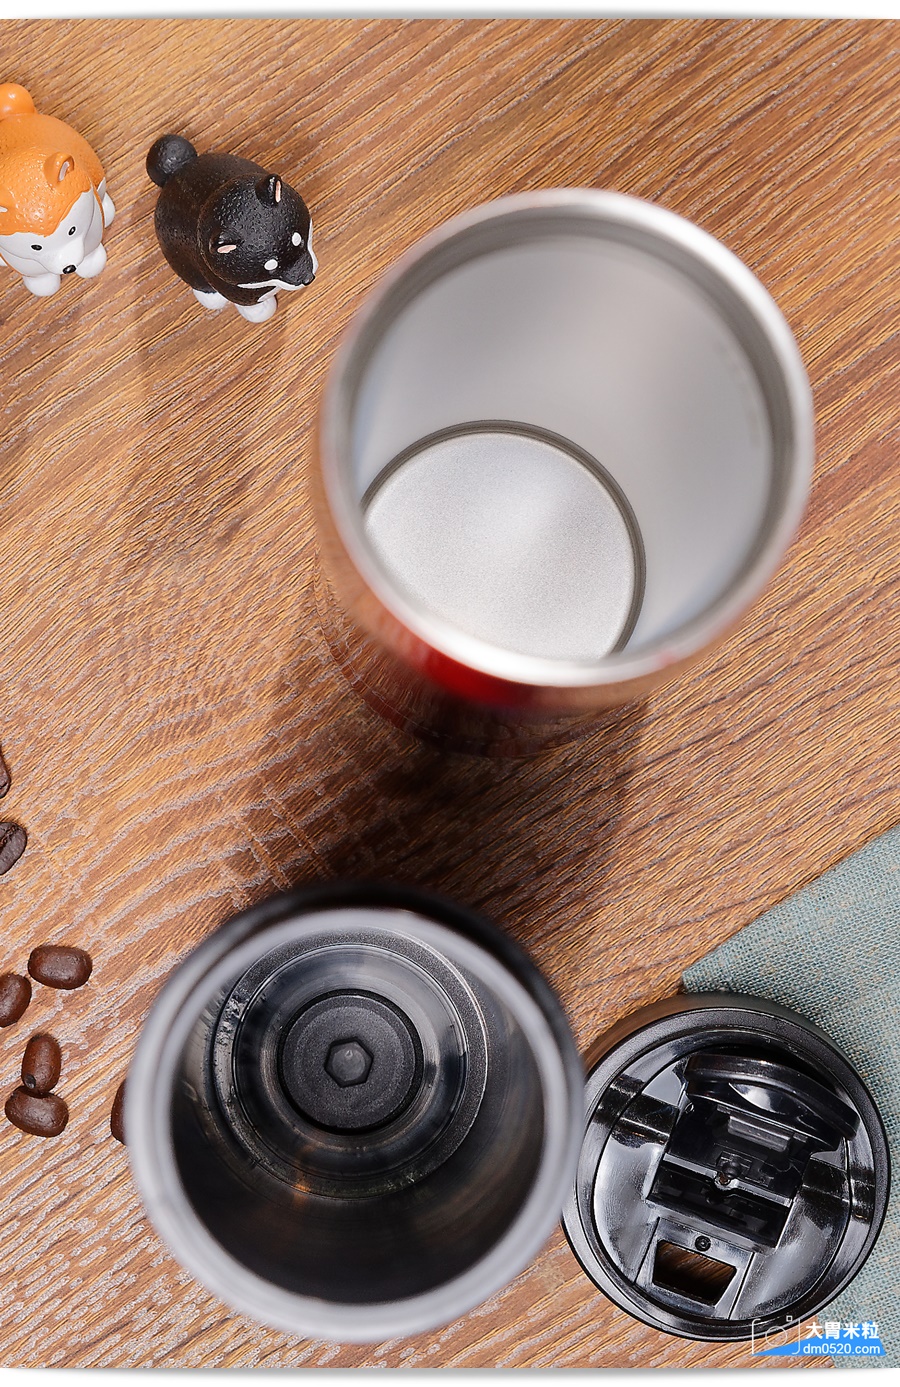 2019咖啡壺推薦,61號交響樂,M61雙層隔離式咖啡泡茶保溫壺,專利設計免耗材過濾！出外隨時想喝優質咖啡好簡單,